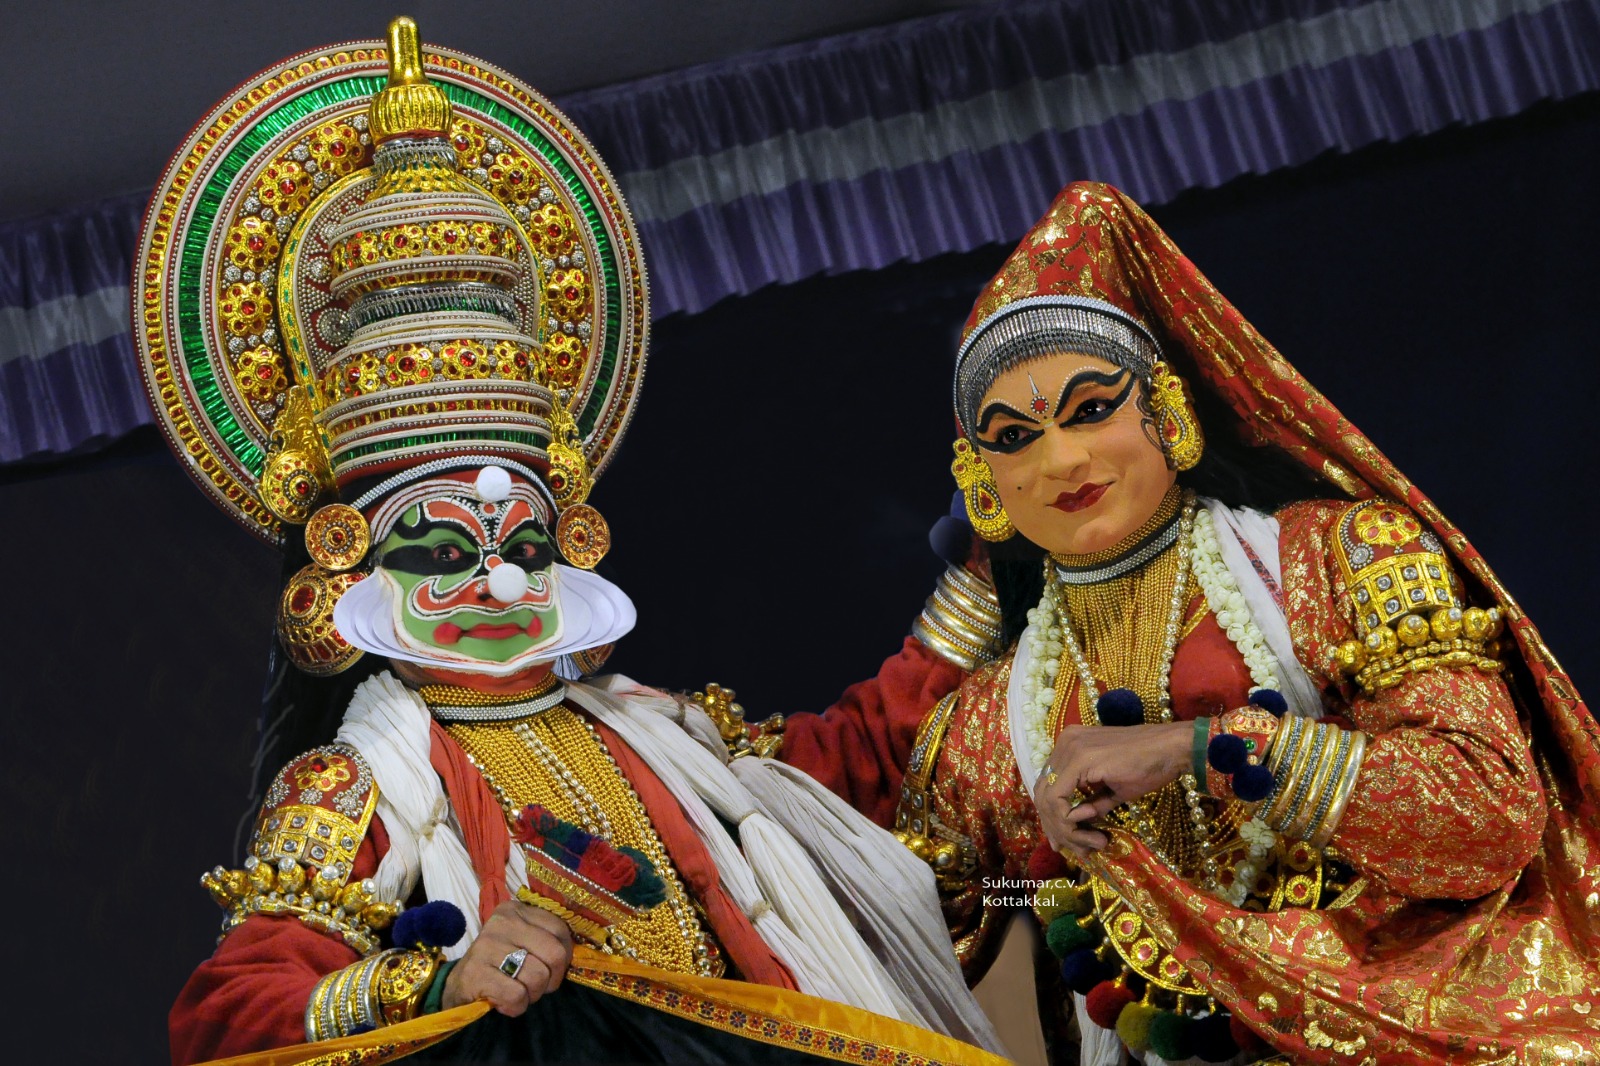 Two Kathakali performers